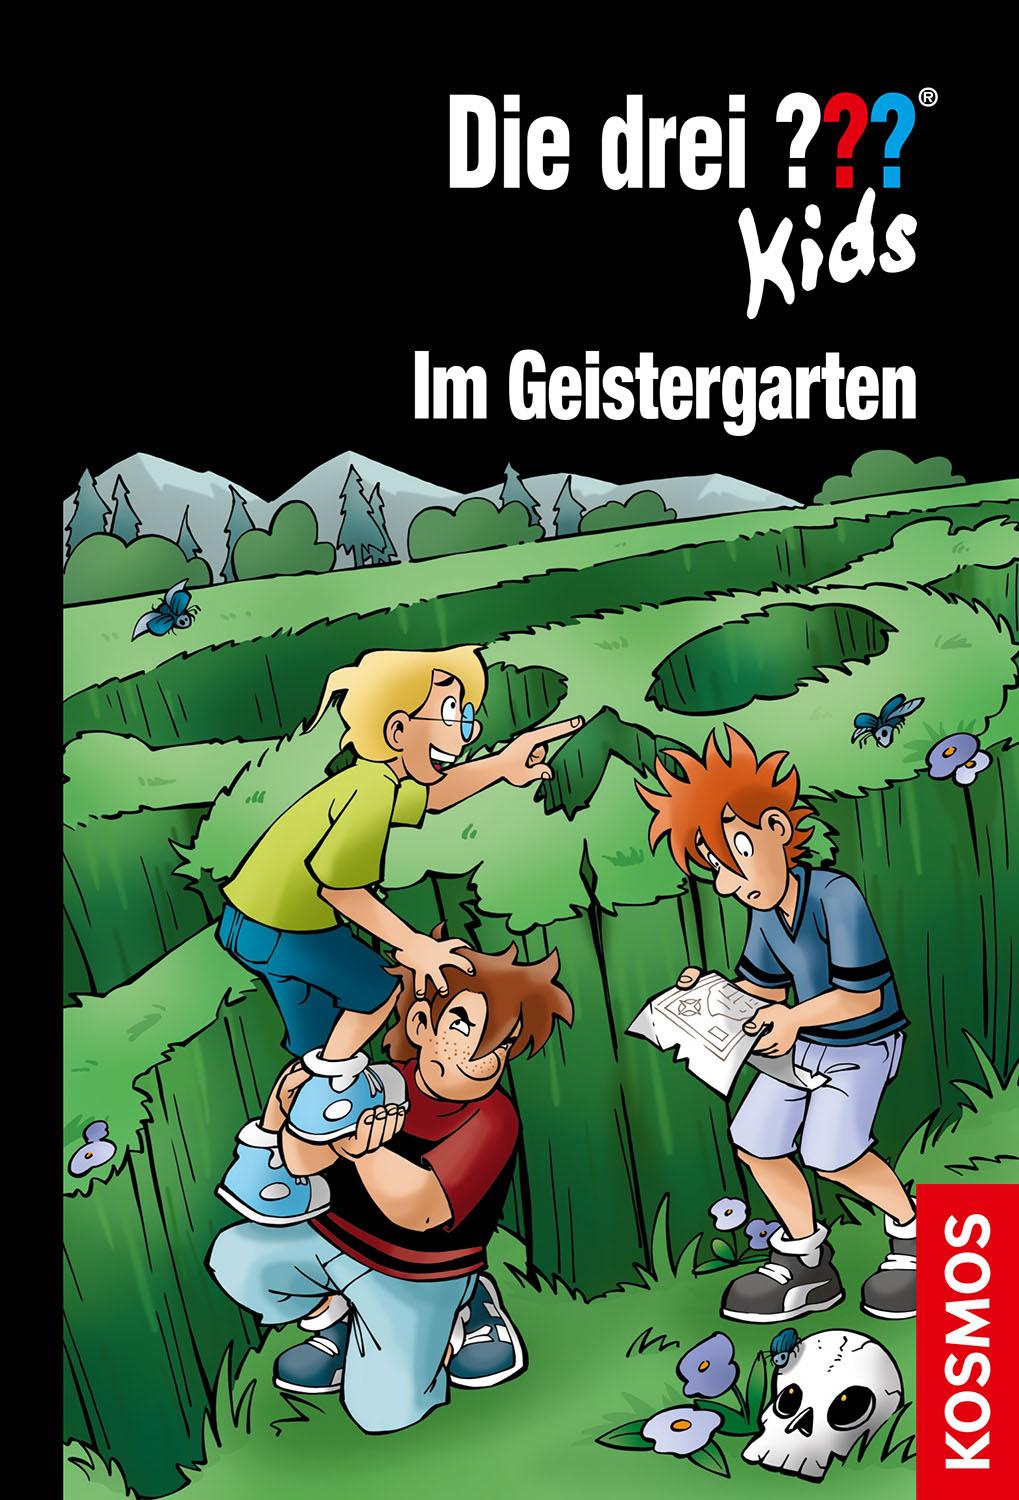 Die drei ''' Kids Buch: Im Geistergarten